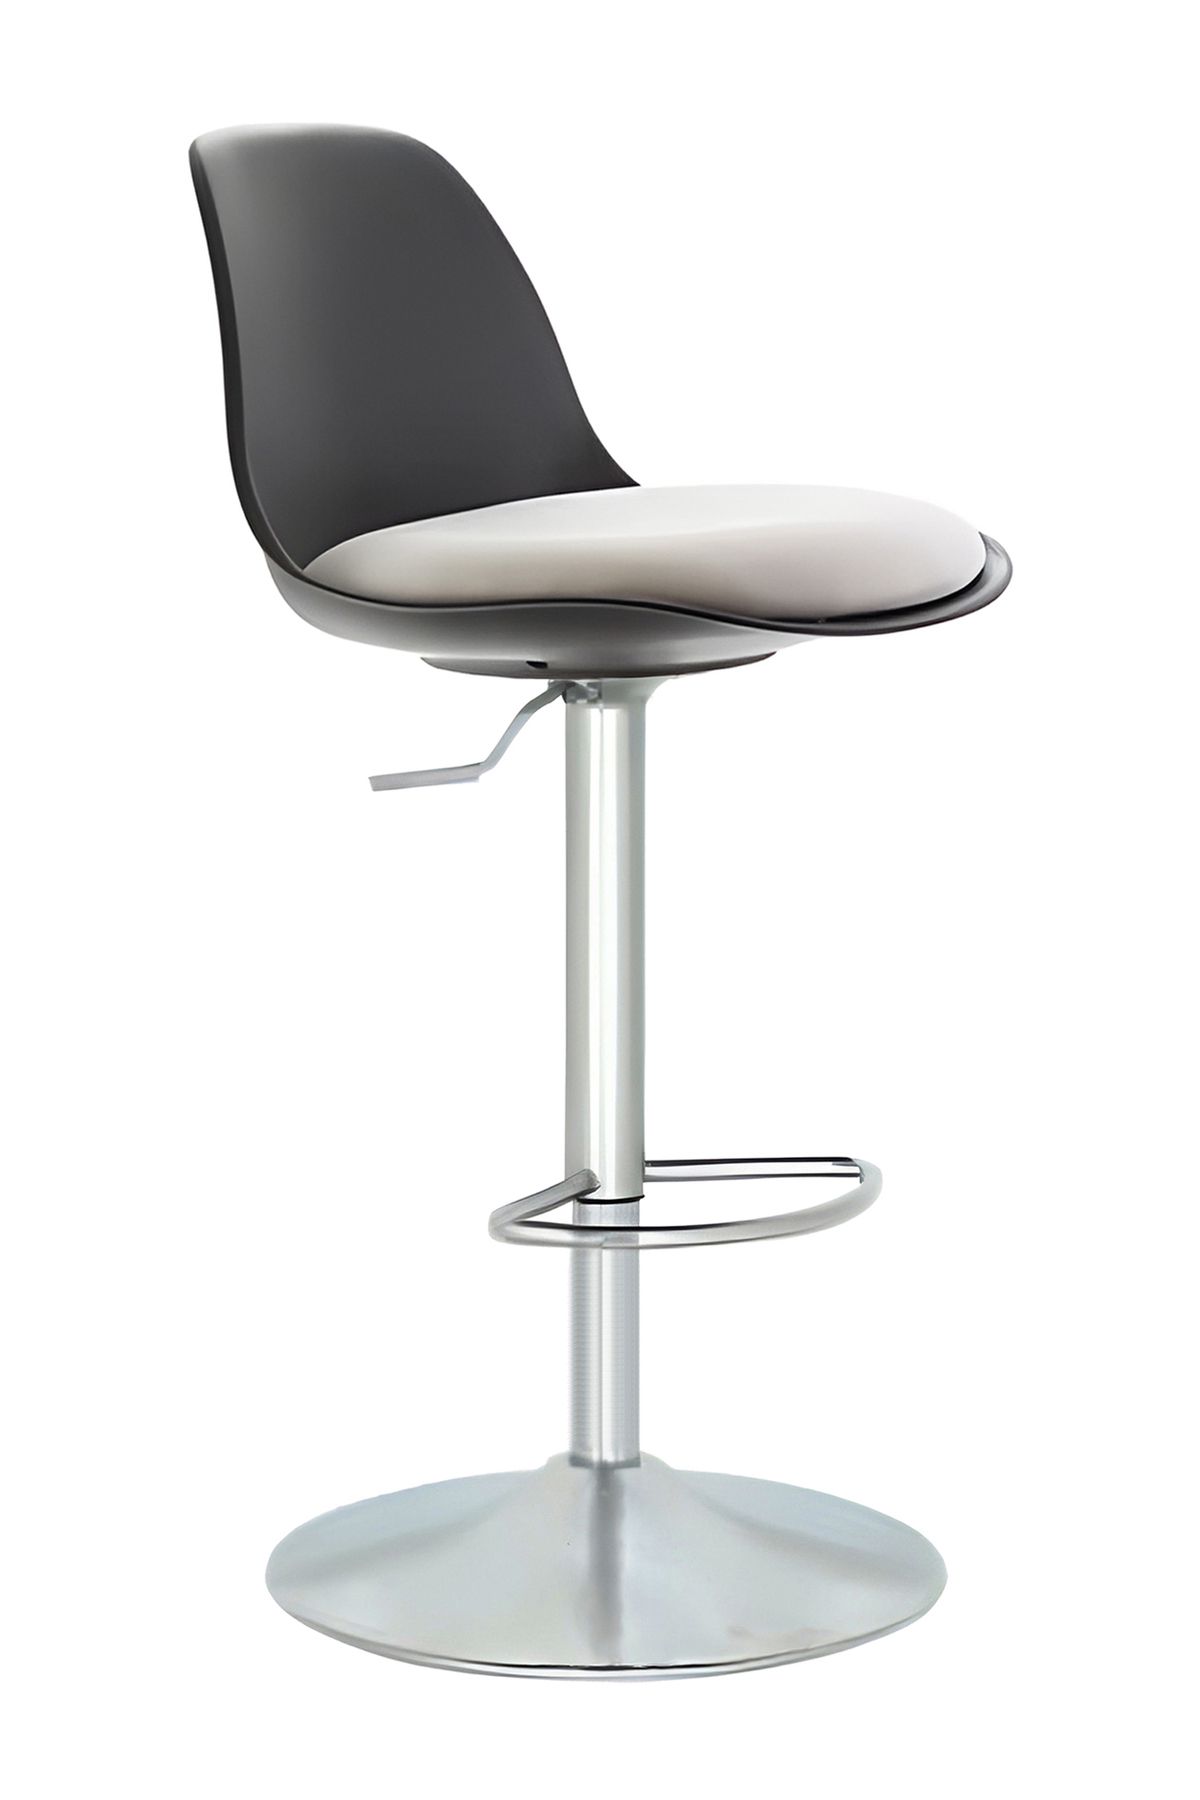 Bürocci Nadya Bar Sandalyesi - Beyaz Deri - Metal Ayaklı Bar Taburesi - 9537s0109